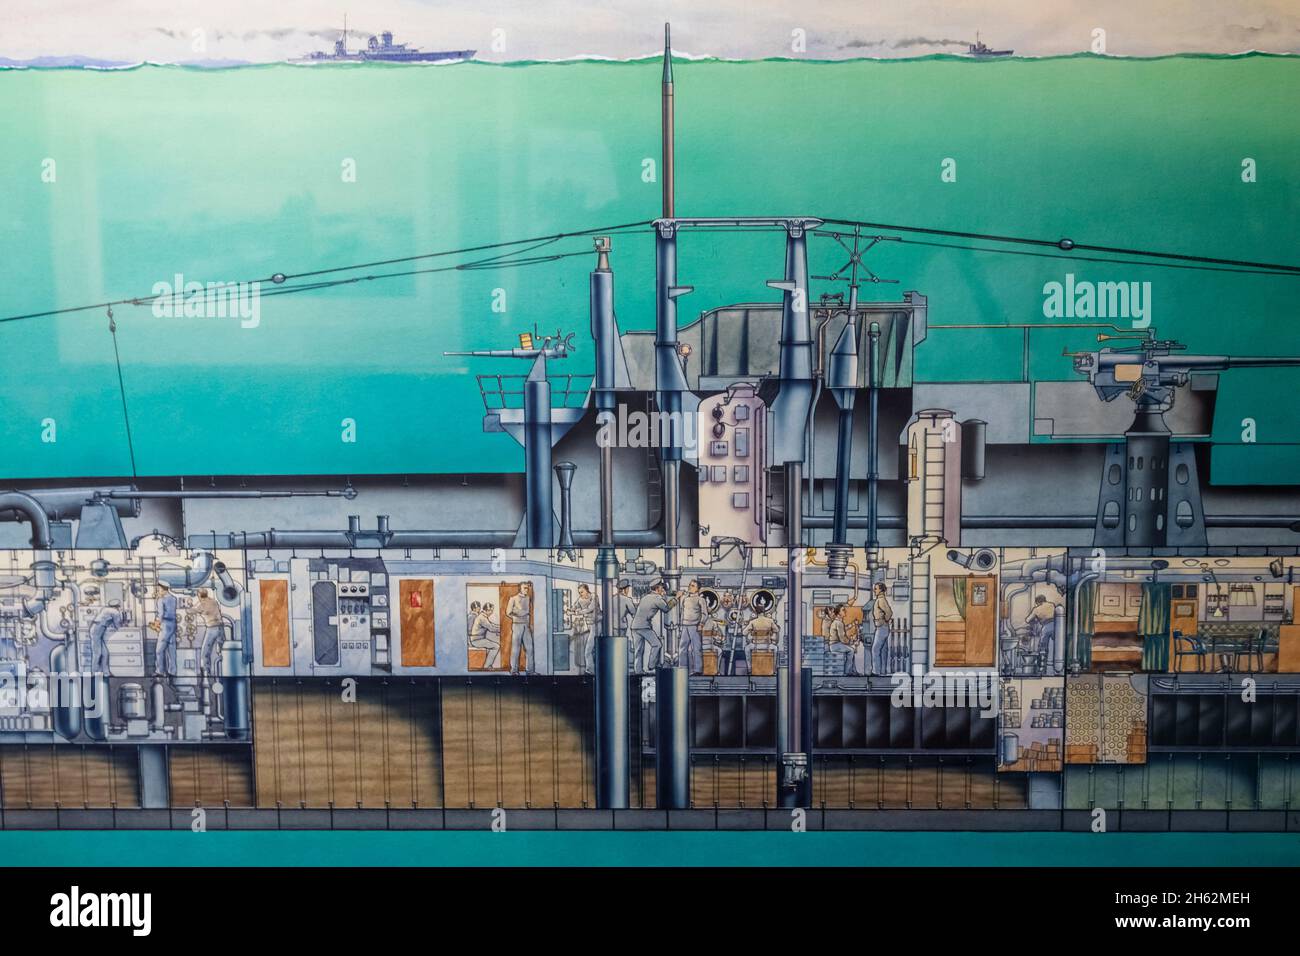 england, hampshire, portsmouth, gosport, portsmouth historische Werft, U-Boot-Museum, Gemälde eines U-Boots der Klasse T in Periskoptiefe Stockfoto